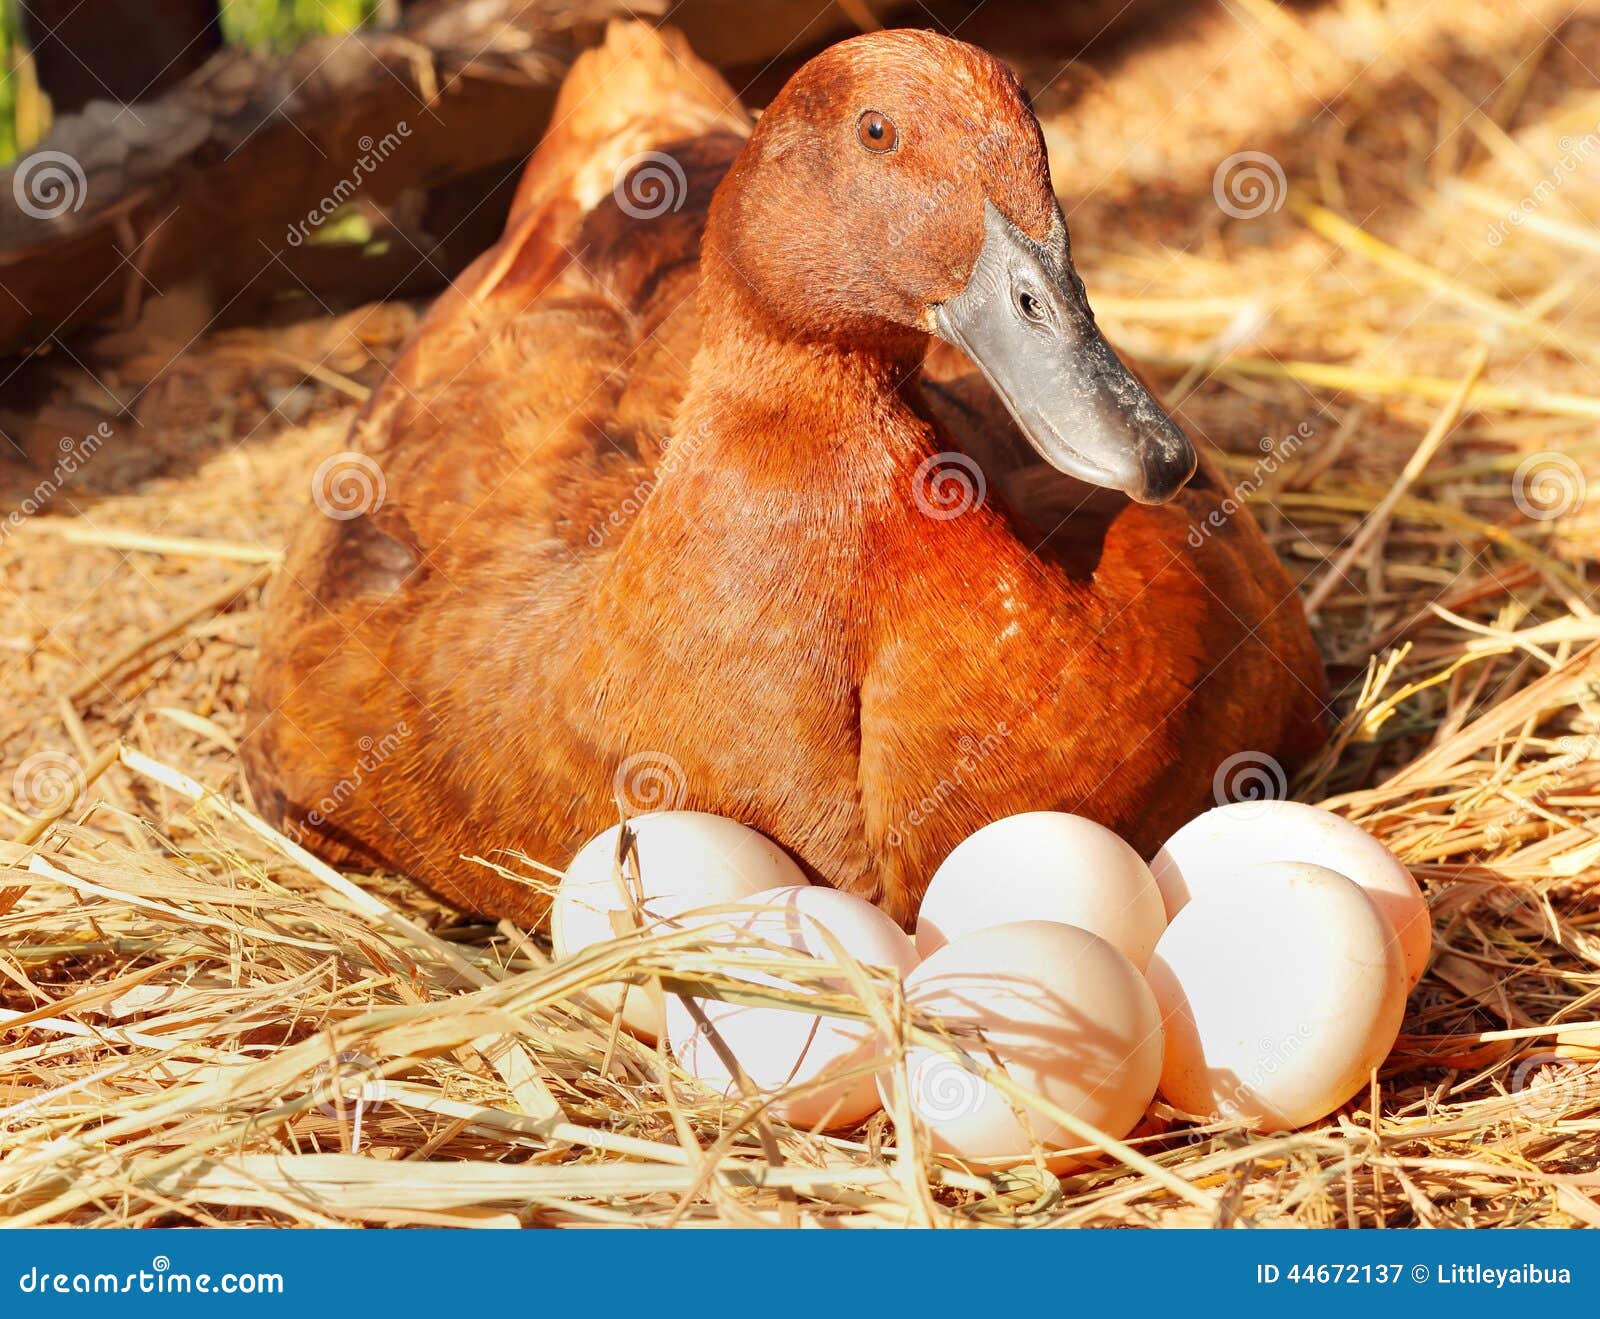 https://thumbs.dreamstime.com/z/duck-incubator-her-eggs-straw-nest-stock-photo-44672137.jpg